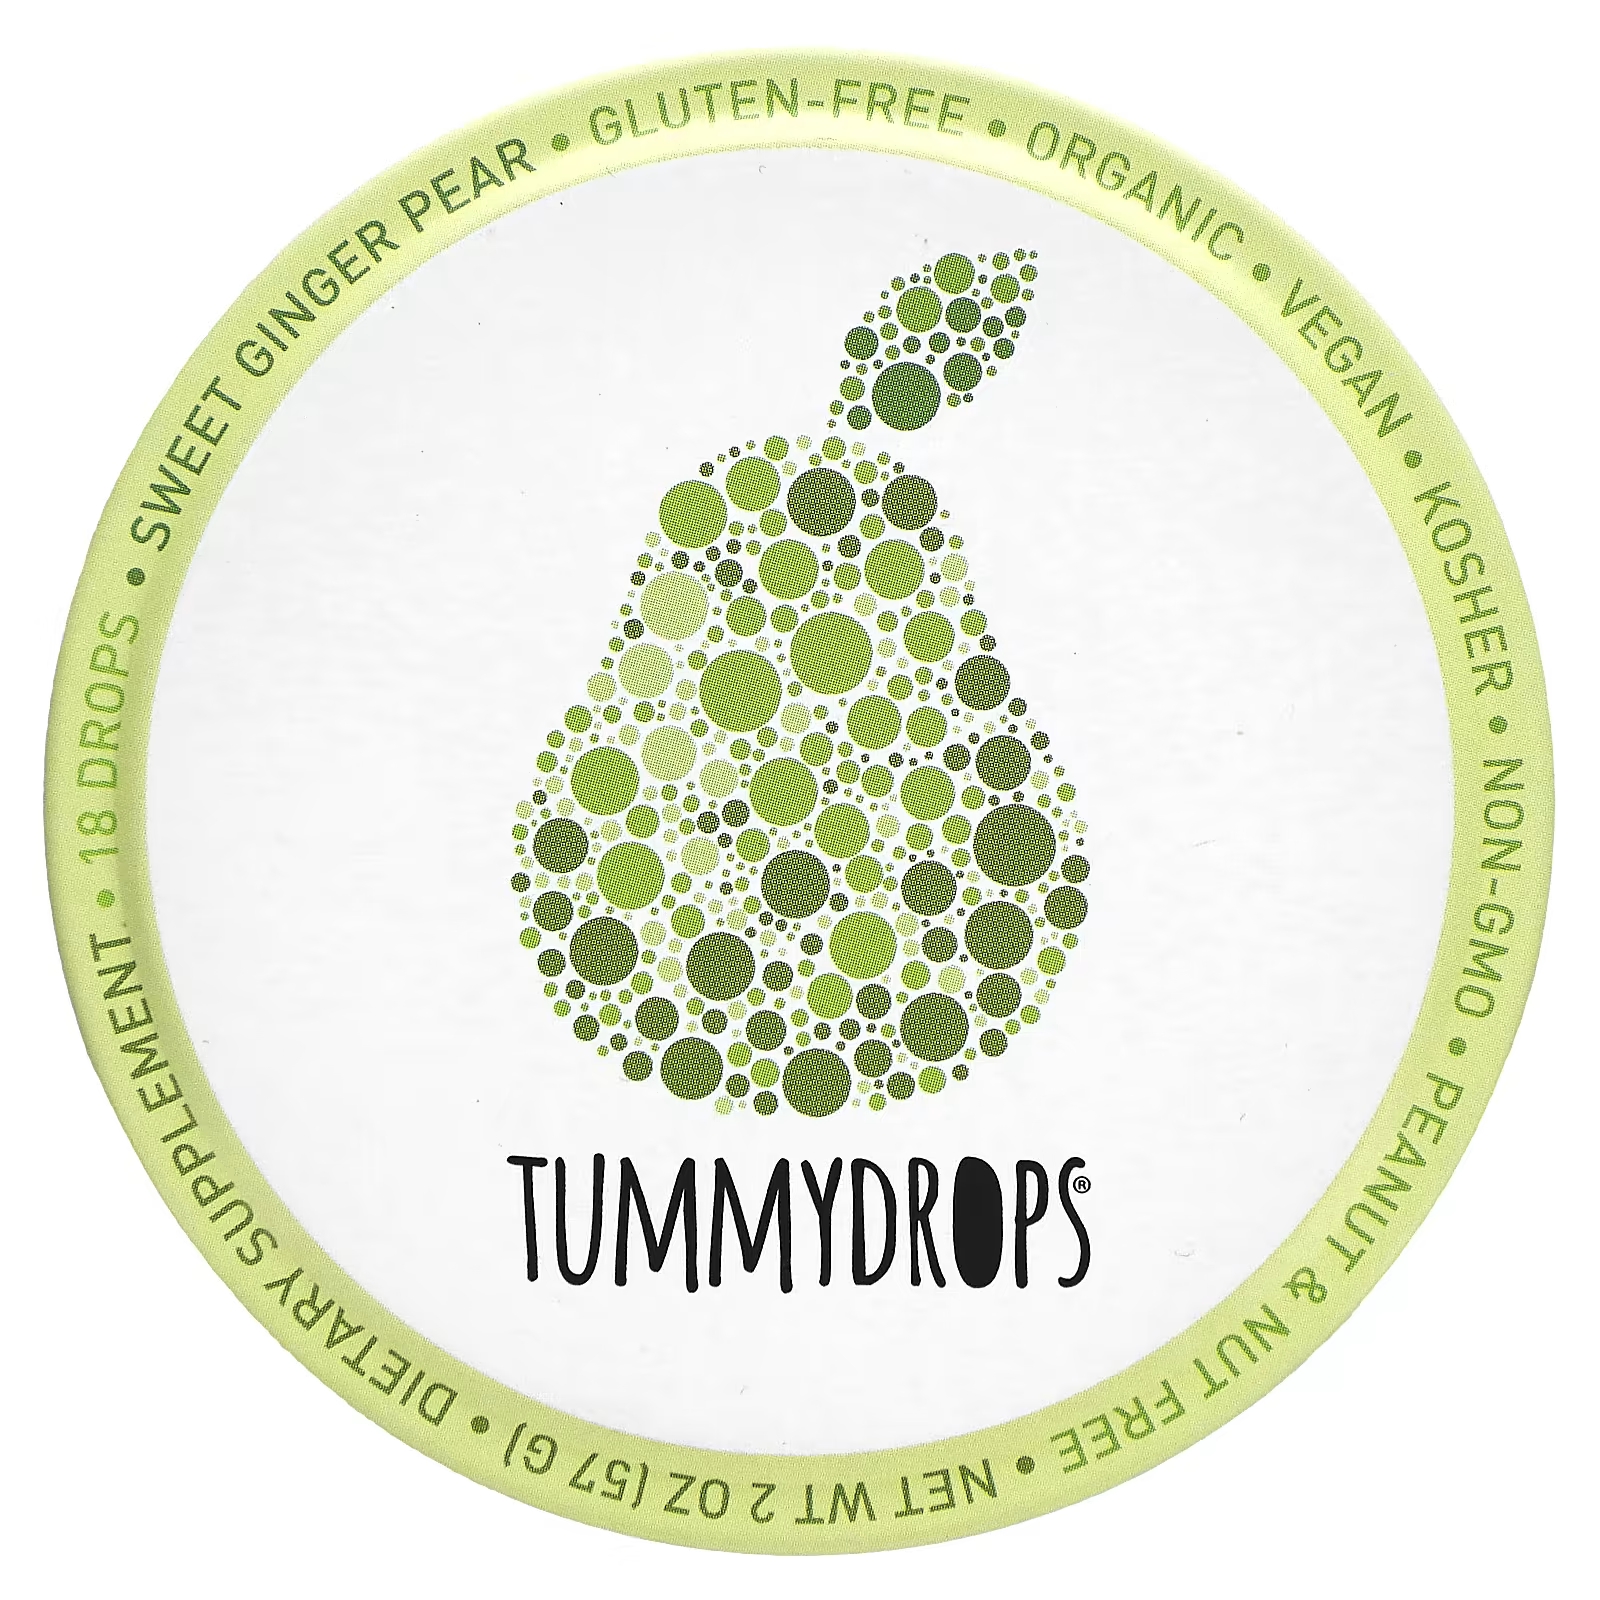 Капли Tummydrops сладкий имбирь и груша, 18 капель tummydrops органическая карамель тыква имбирь 18 капель 57 г 2 унции